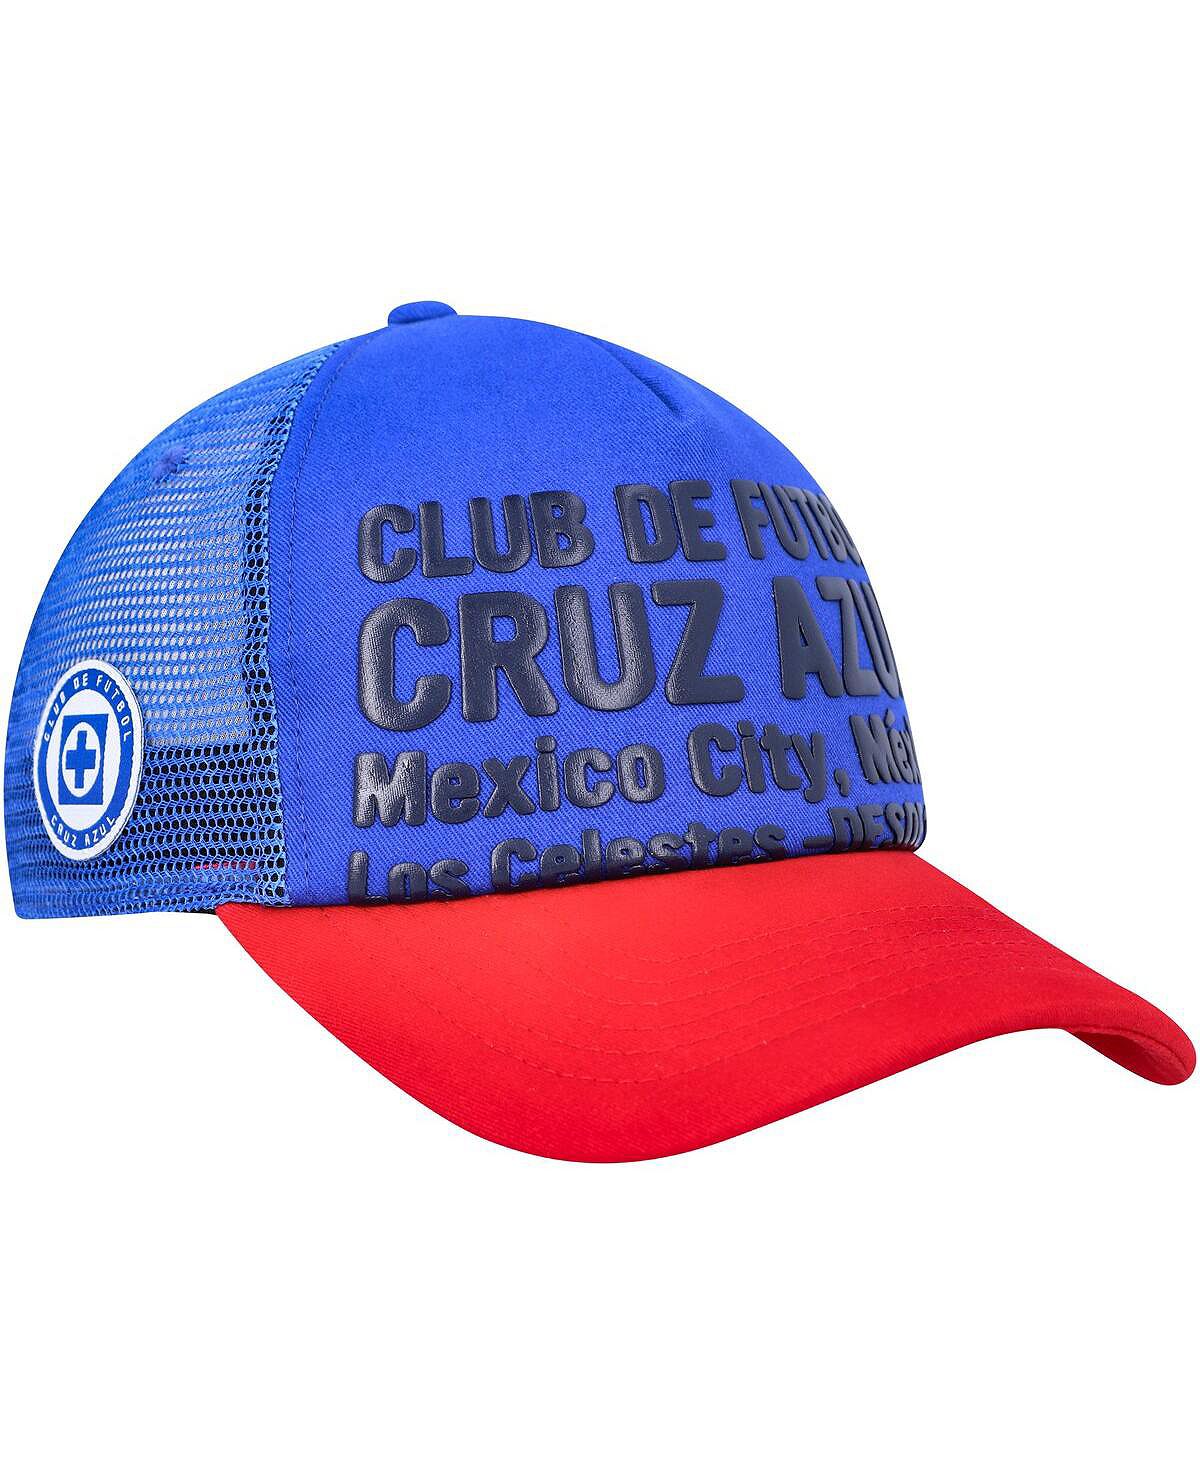 мужская синяя регулируемая шляпа cruz azul club gold fan ink Мужская синяя регулируемая шляпа Cruz Azul Club Gold Fan Ink